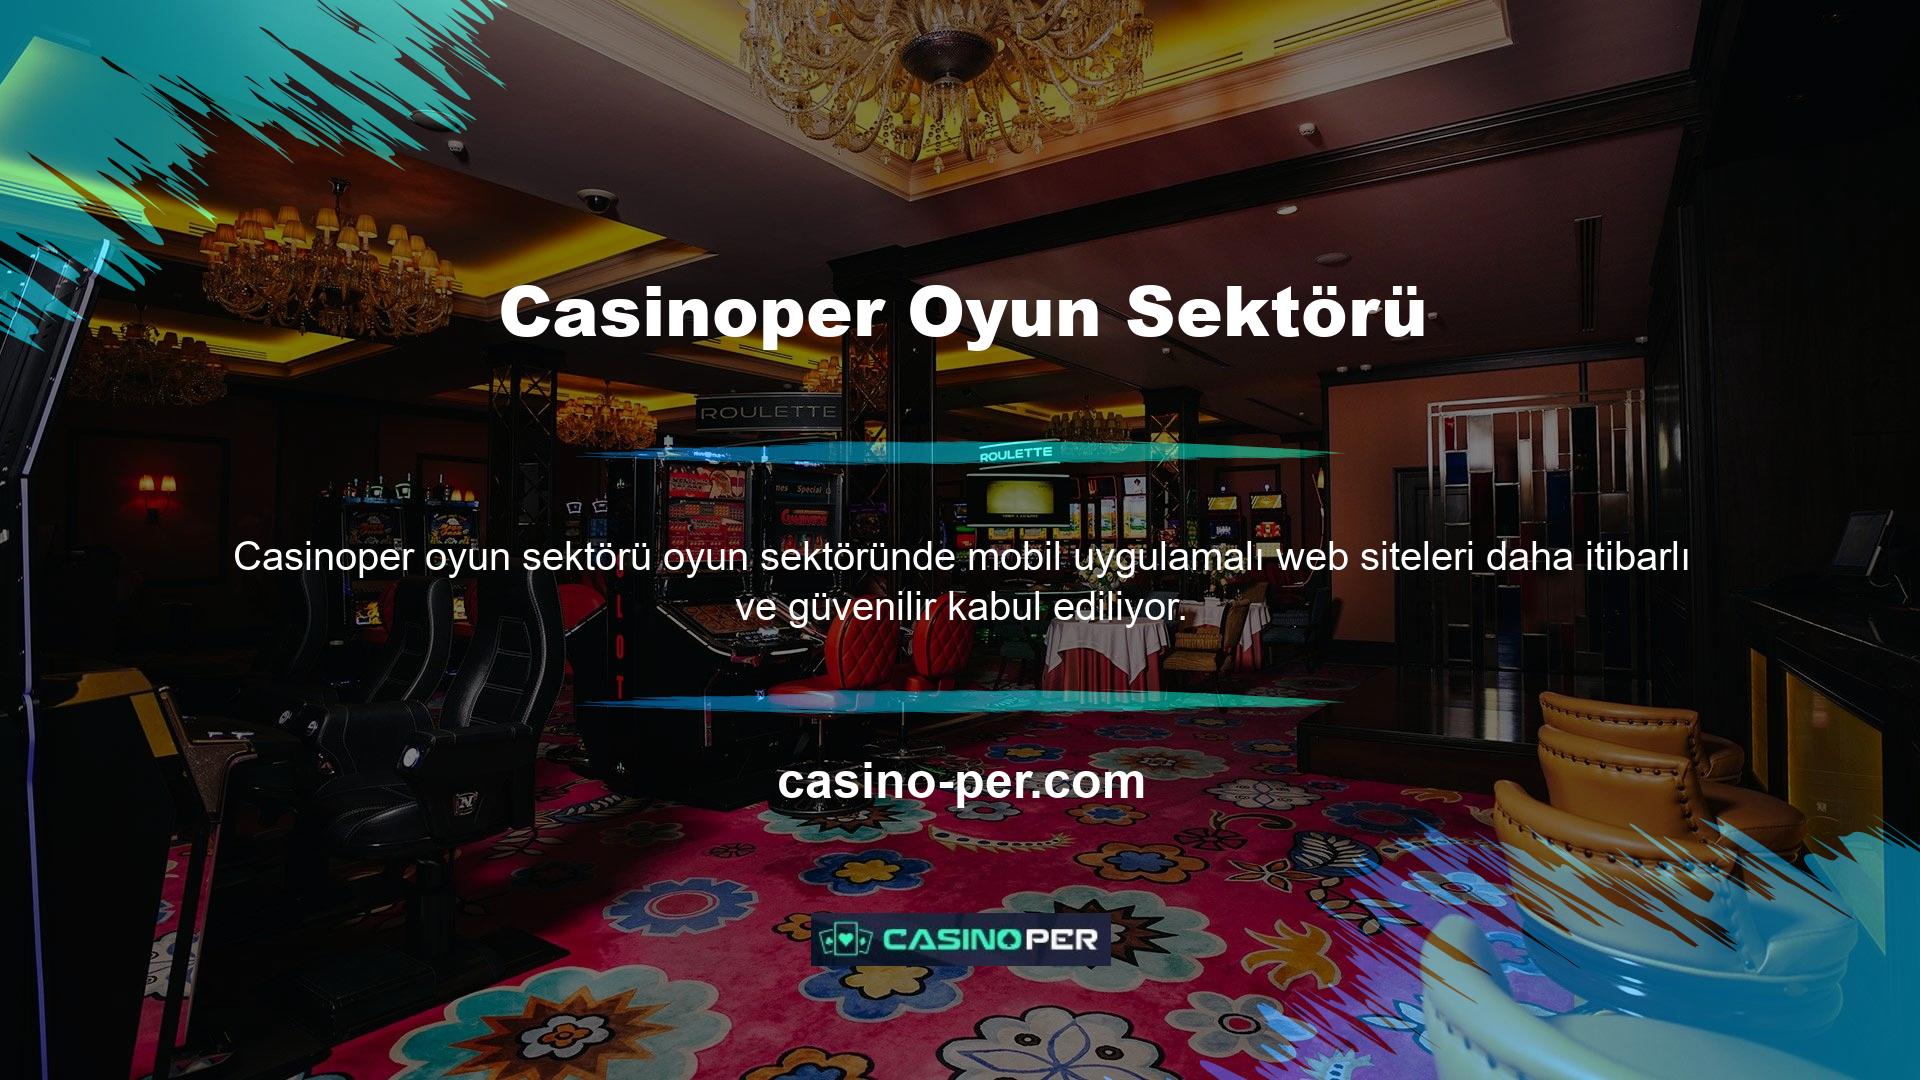 Tüm spor bahis siteleri mobil uyumlu değildir, dolayısıyla heyecan verici casino oyunları oynamak için güvenli mobil uygulamamızı kullanabilirsiniz